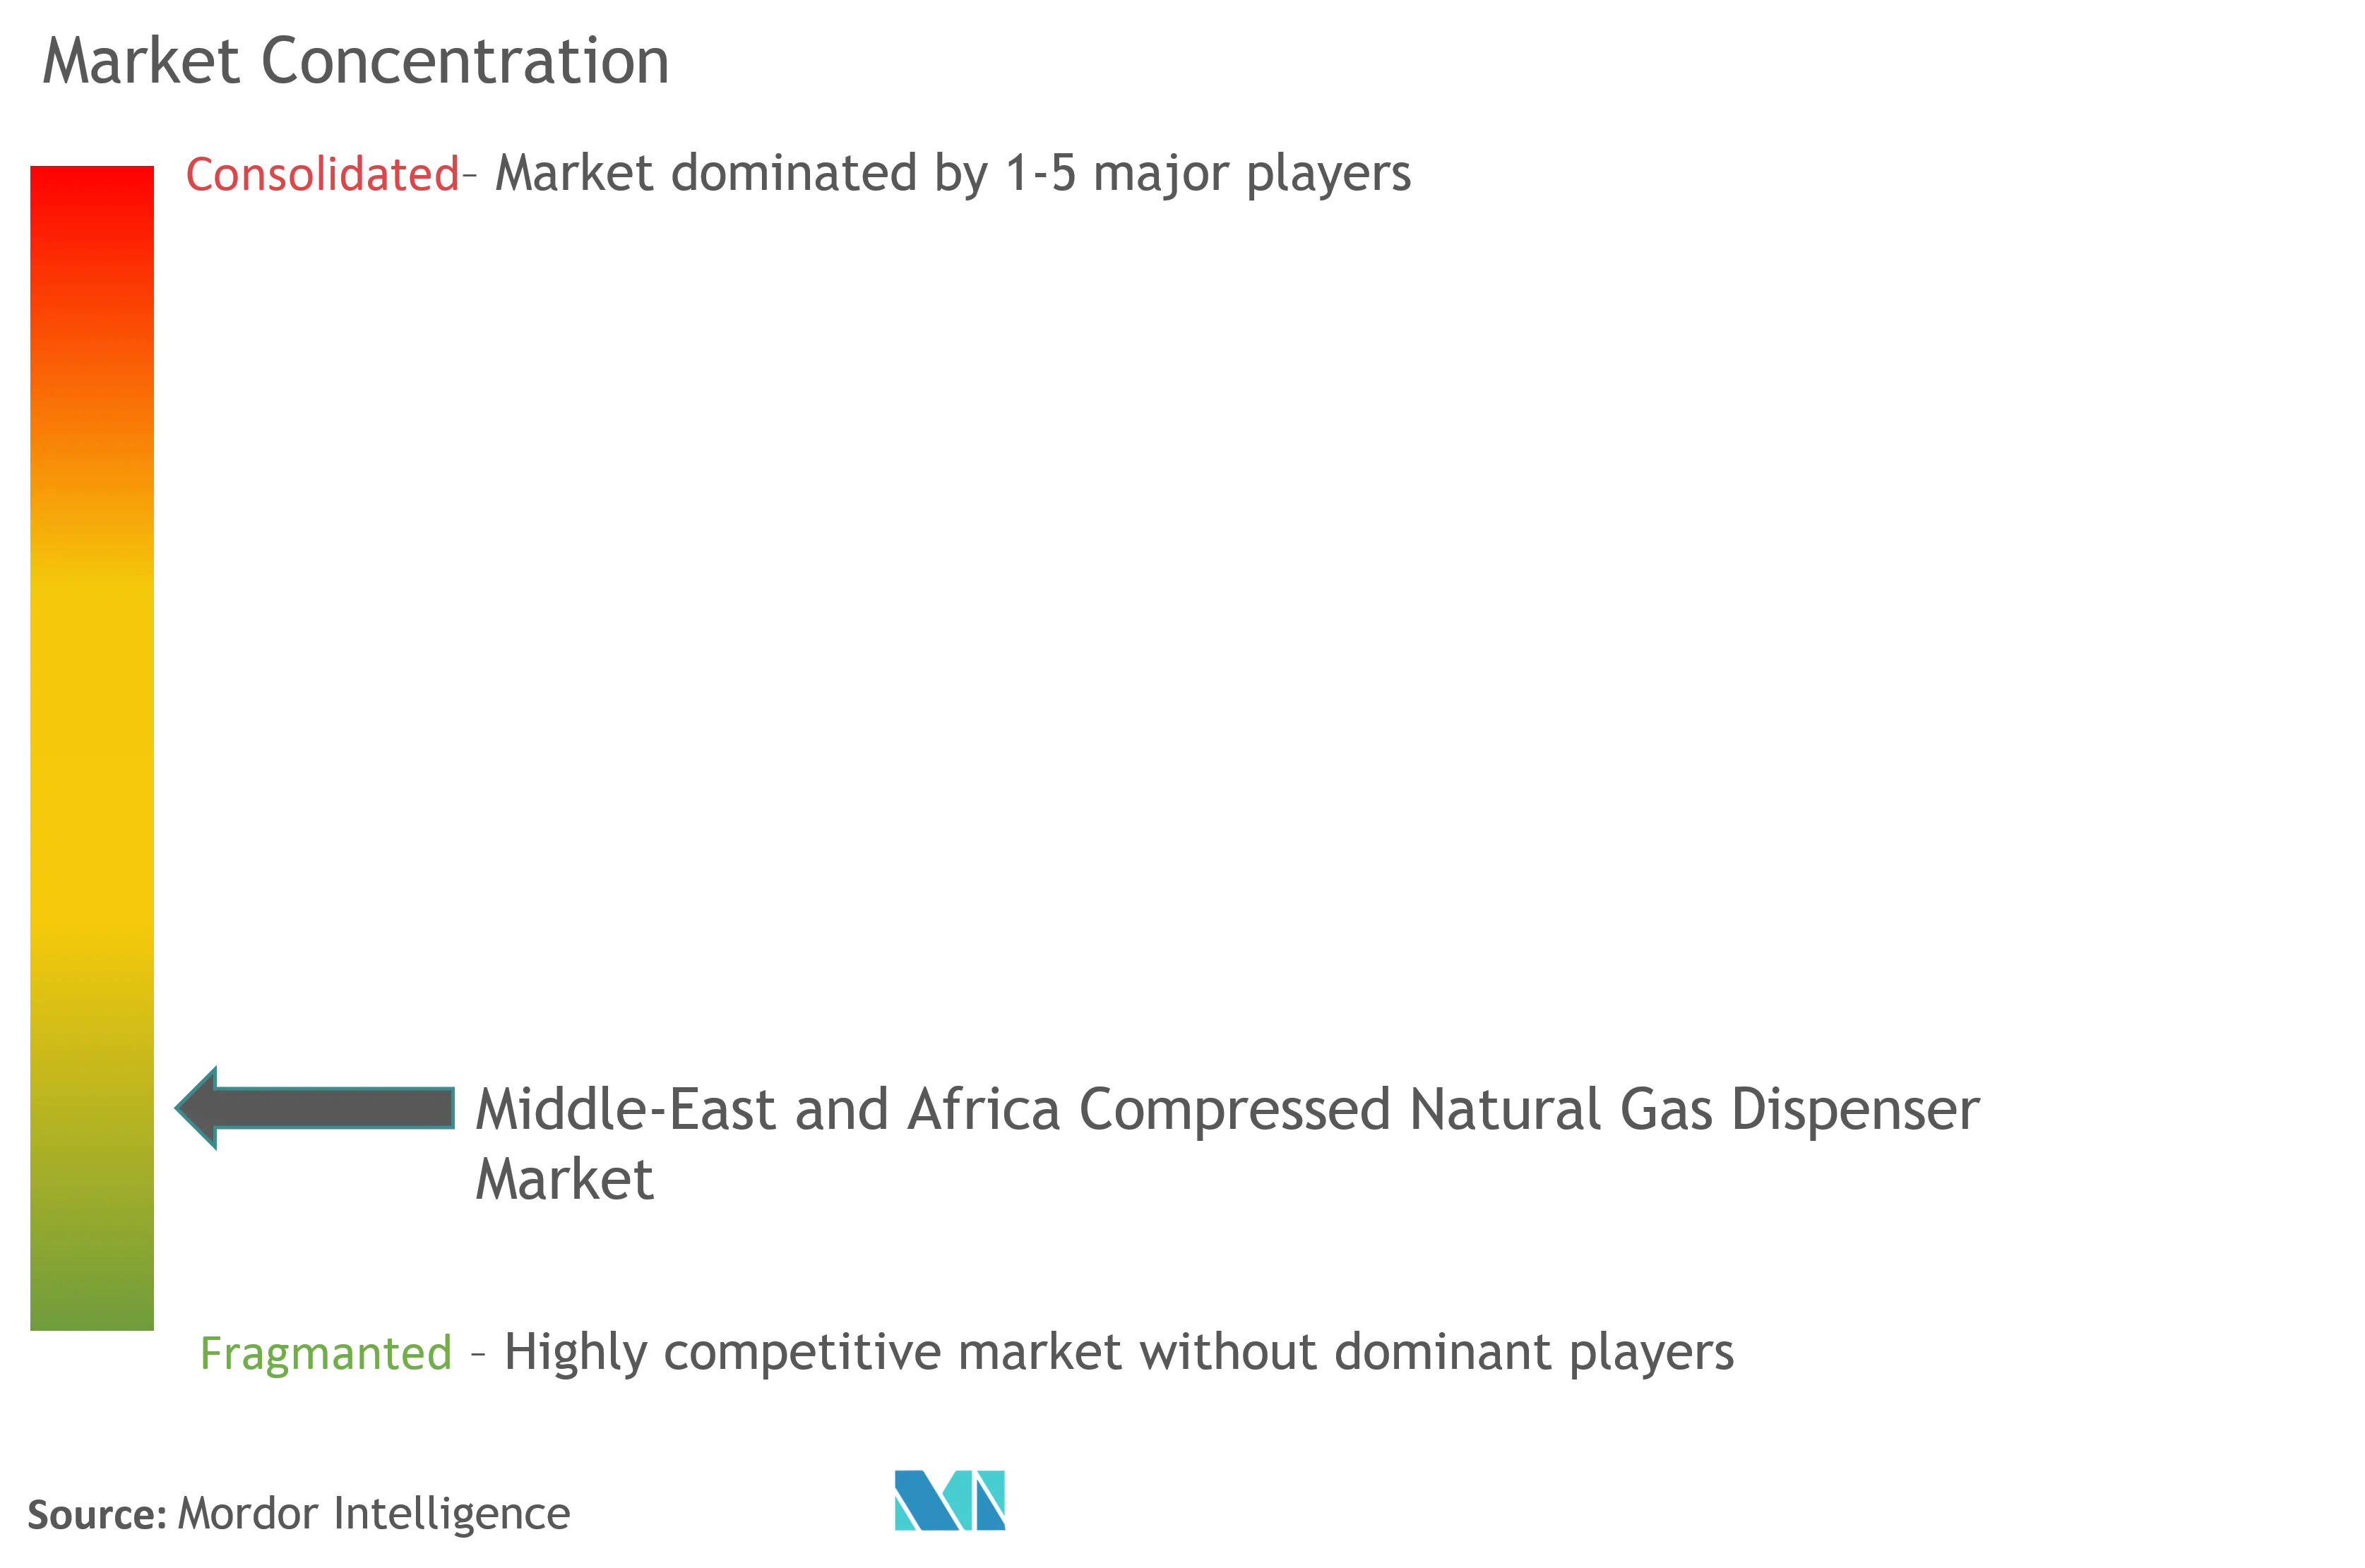 MEA Compressed Natural Gas Dispenser Market Concentration